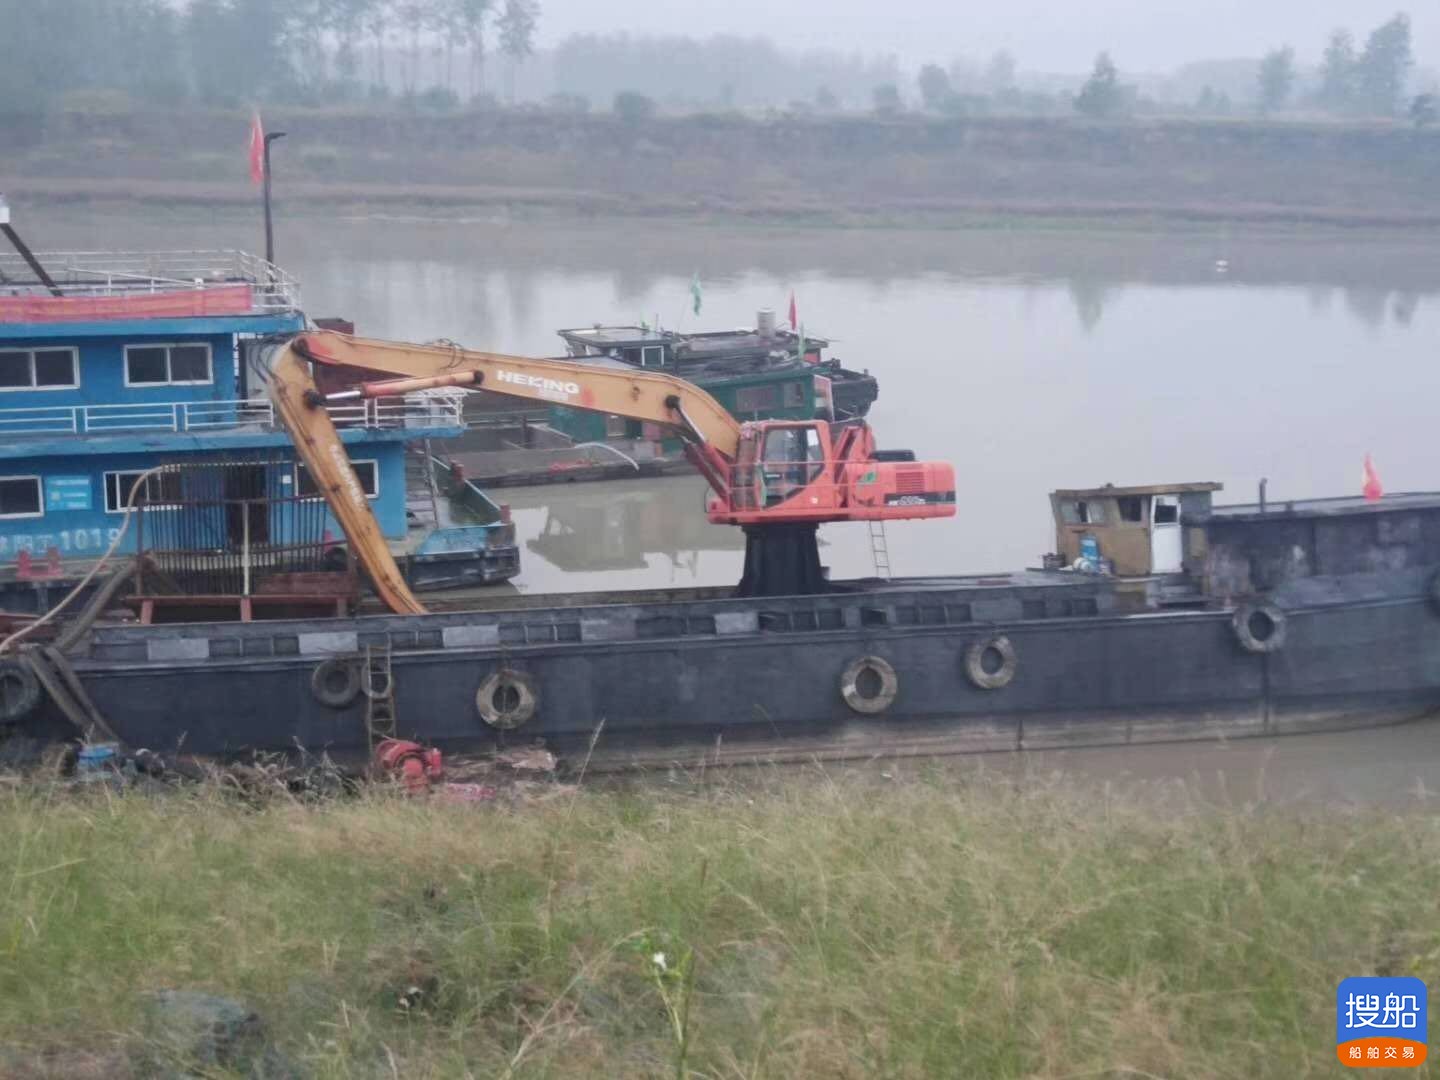 供购一台如许的船挖  北京-2.jpg